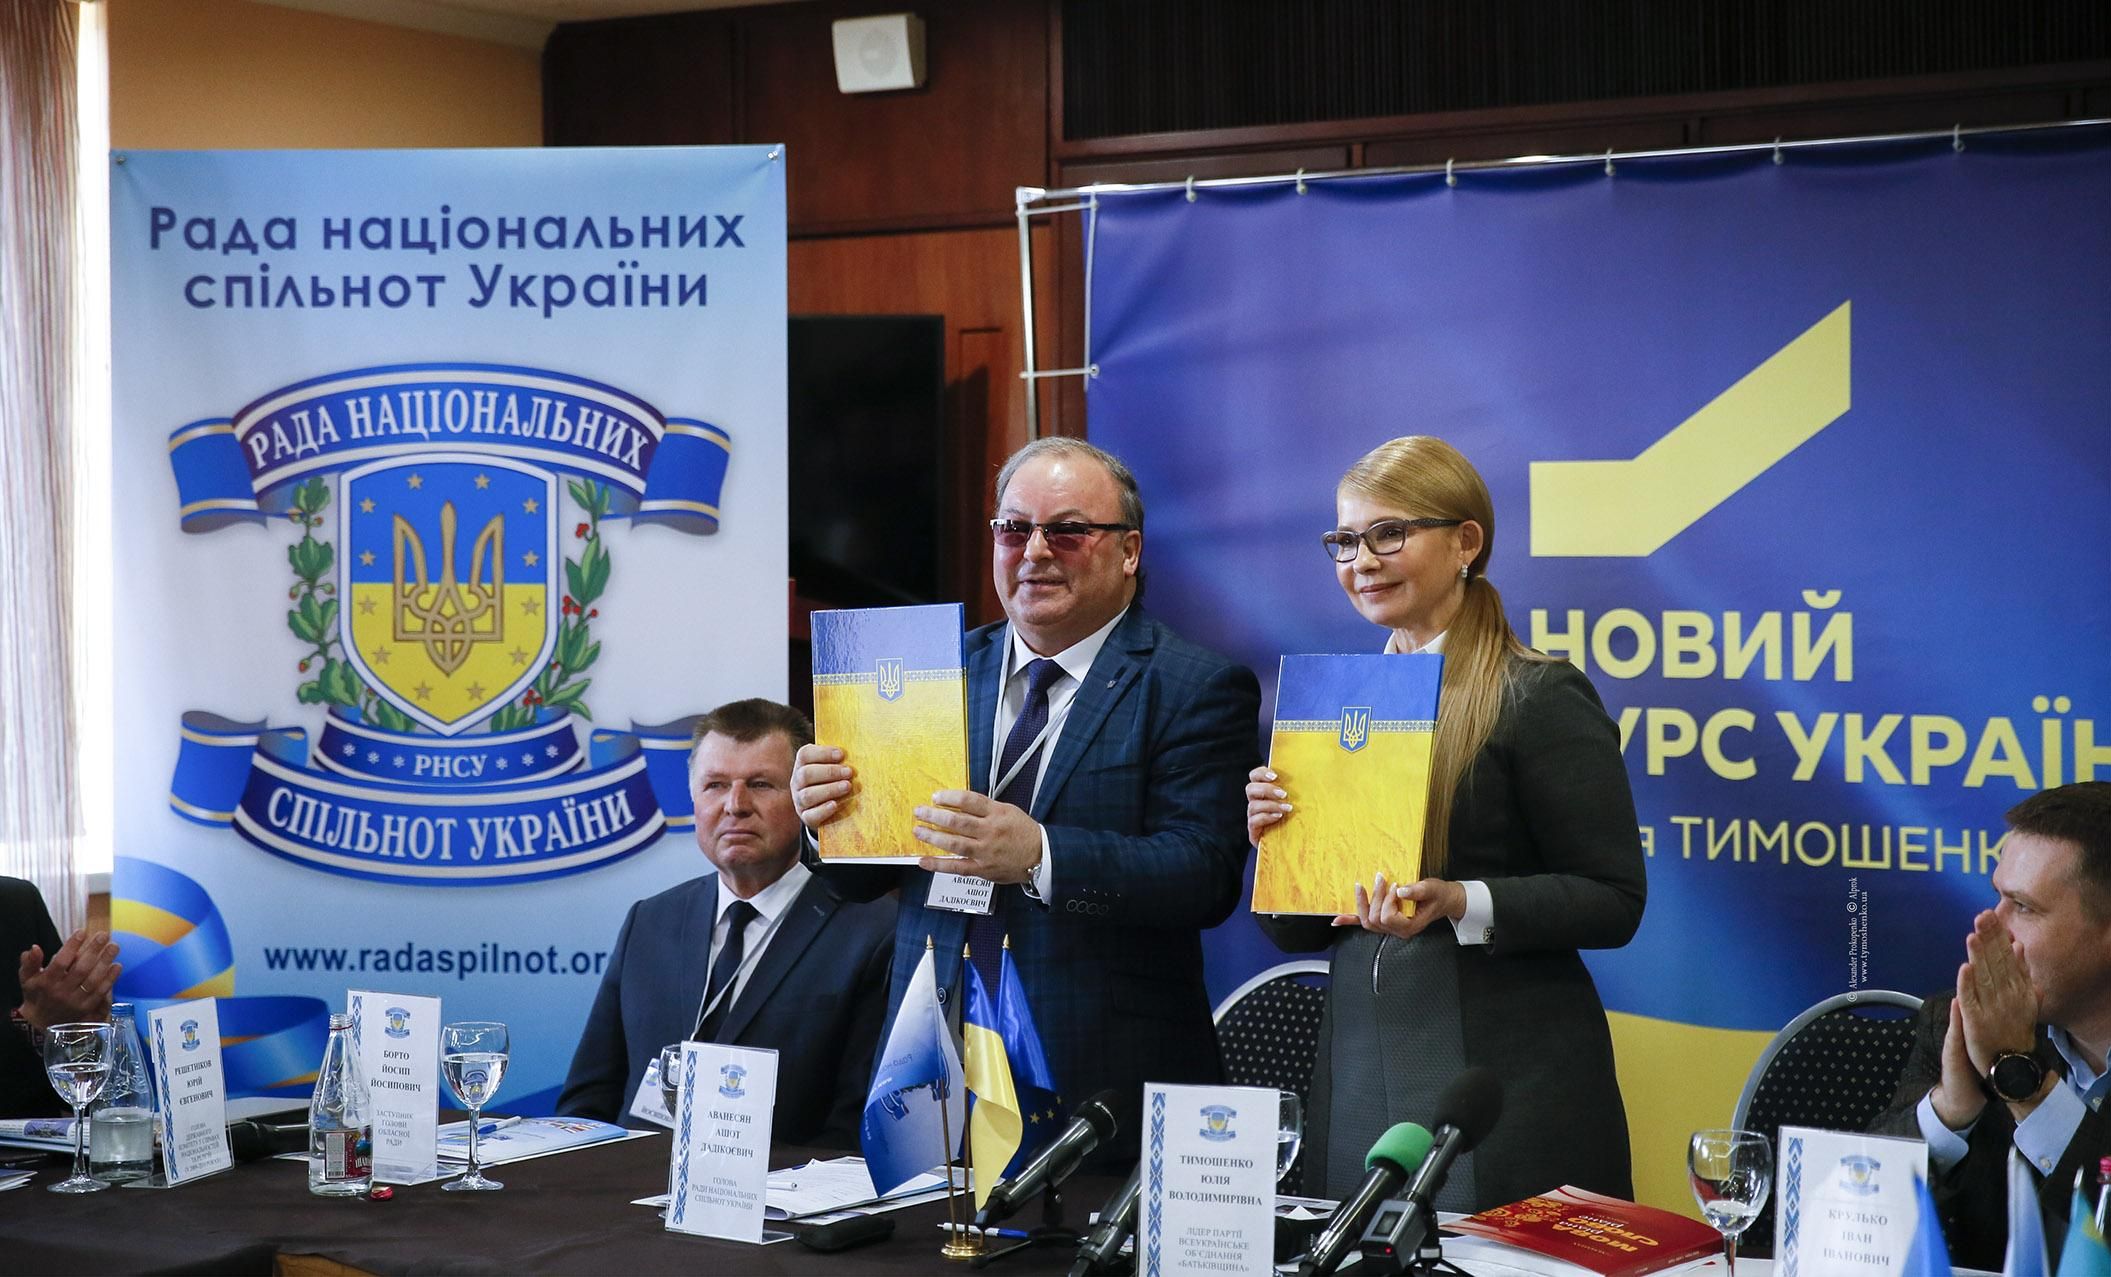 Тимошенко та представники національних спільнот підписали Хартію міжнаціональної злагоди